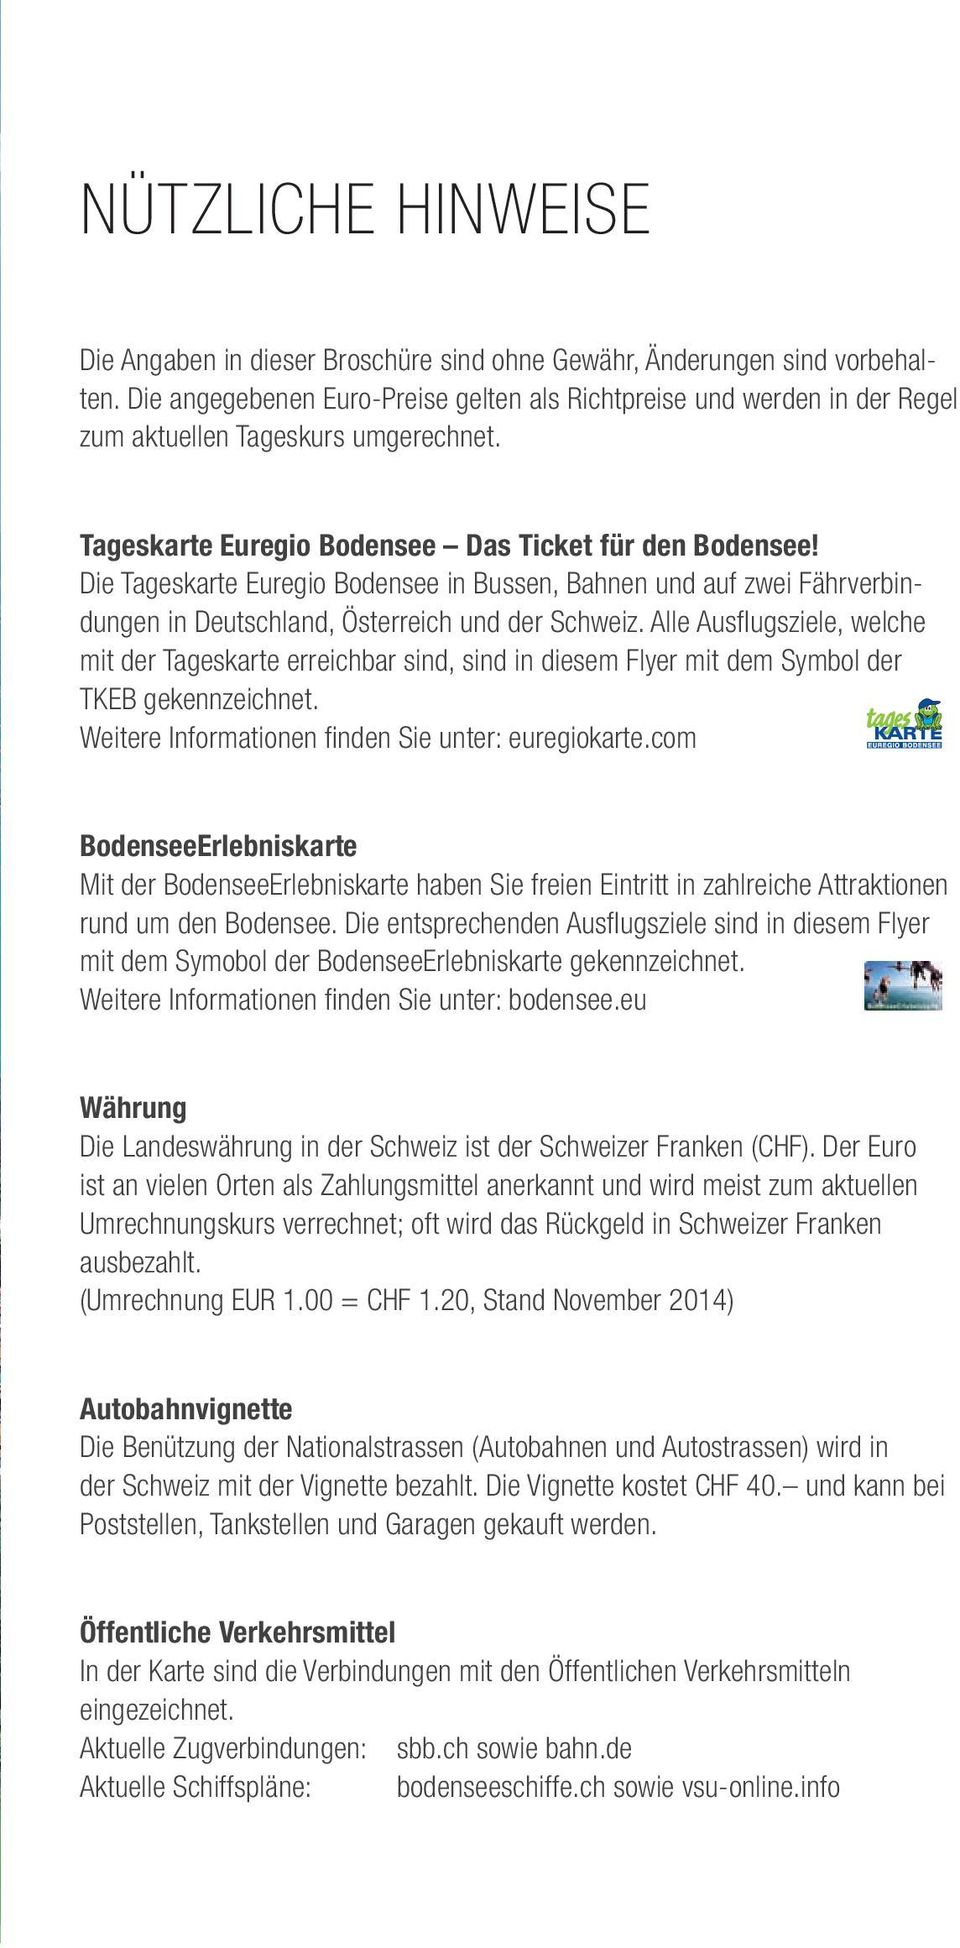 Die Tageskarte Euregio Bodensee in Bussen, Bahnen und auf zwei Fährverbindungen in Deutschland, Österreich und der Schweiz.